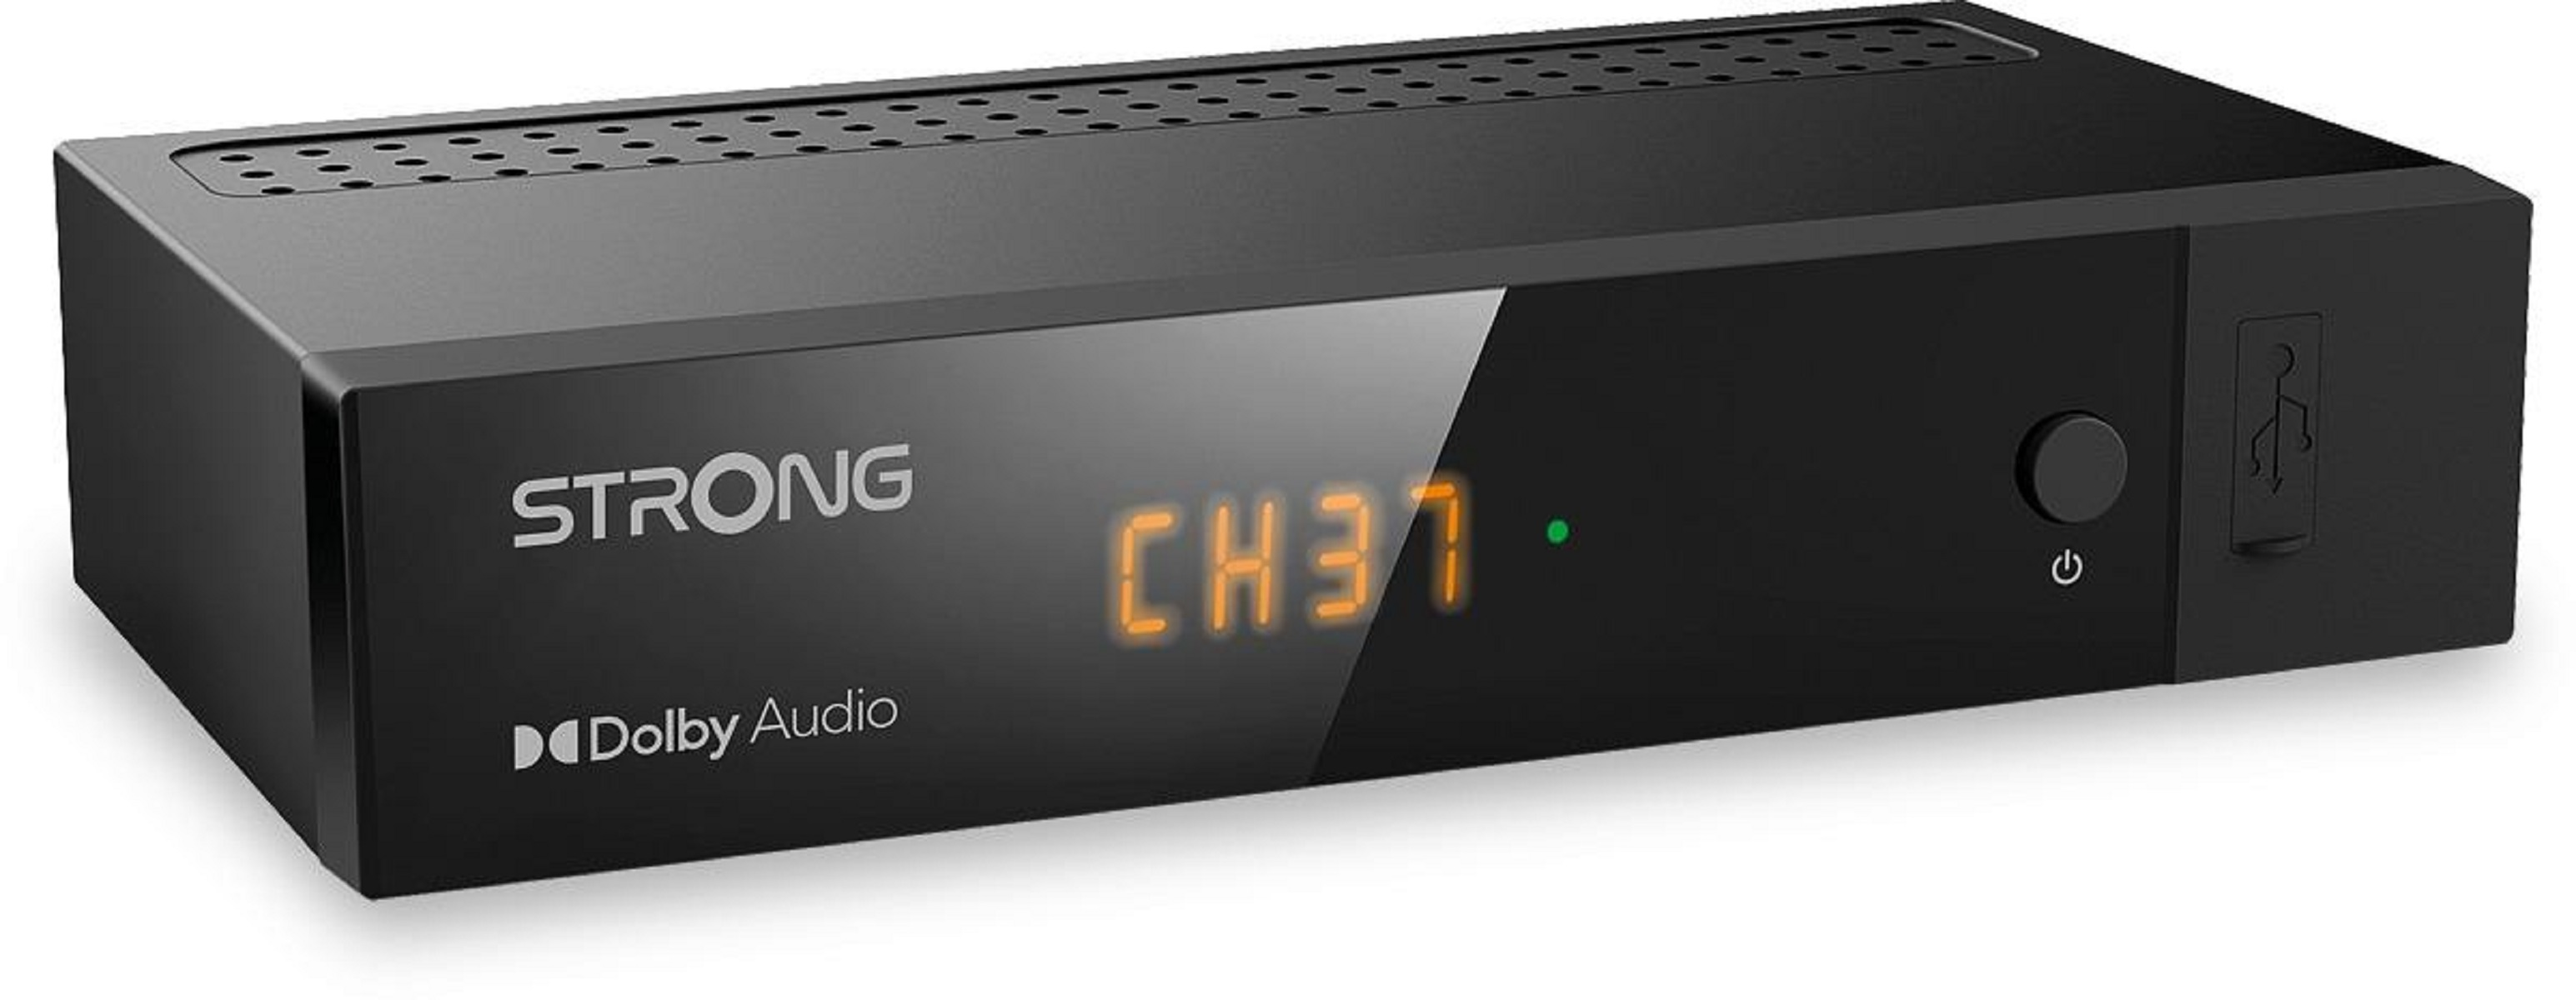 HD 8216 SRT Receiver STRONG (DVB-T2 schwarz) Terrestrischer (H.265),